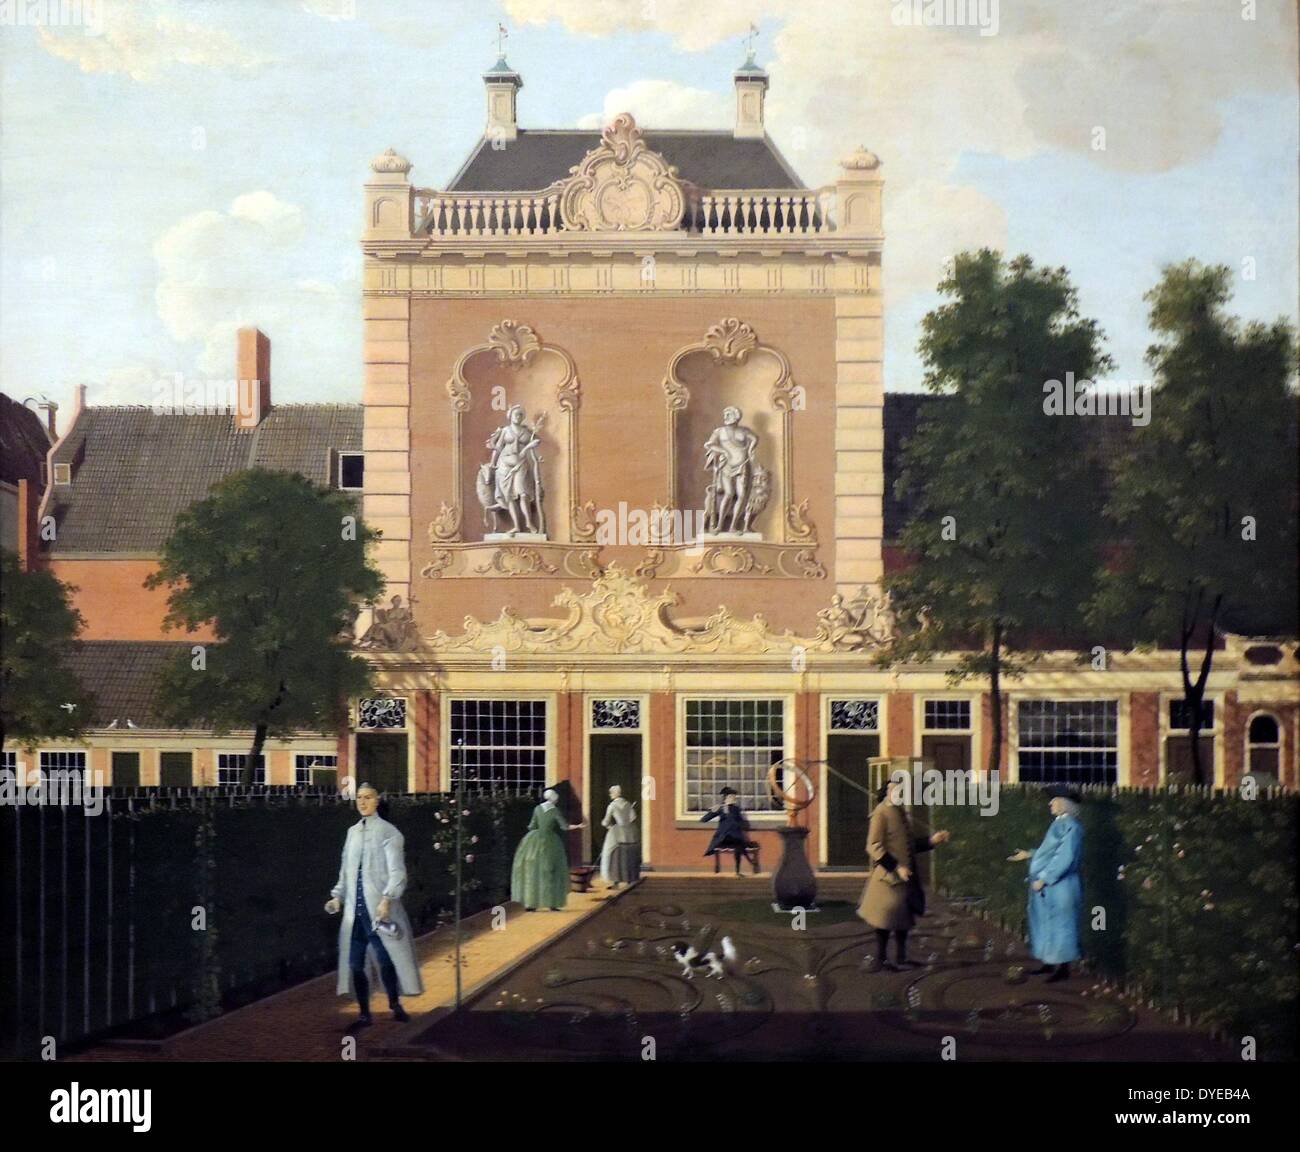 Den Garten und Coach House von 524 der Keizersgracht in Amsterdam von Hendrik Keun (1738-1787), Öl auf Leinwand, 1772. Nicolaas Doekscheer, der bei 524 Keizersgracht lebte, ein Grand, Rokoko Coach House auf der Kerkstraat, die an die Rückseite seines Gartens. Er ist hier dargestellt im Gespräch mit dem Gärtner, während seine Frau spricht von einer Magd. Zwei junge Männer sind Doekscheer's Neffen und Erben. Das Gemälde ist noch in seinem ursprünglichen Rokoko. Stockfoto